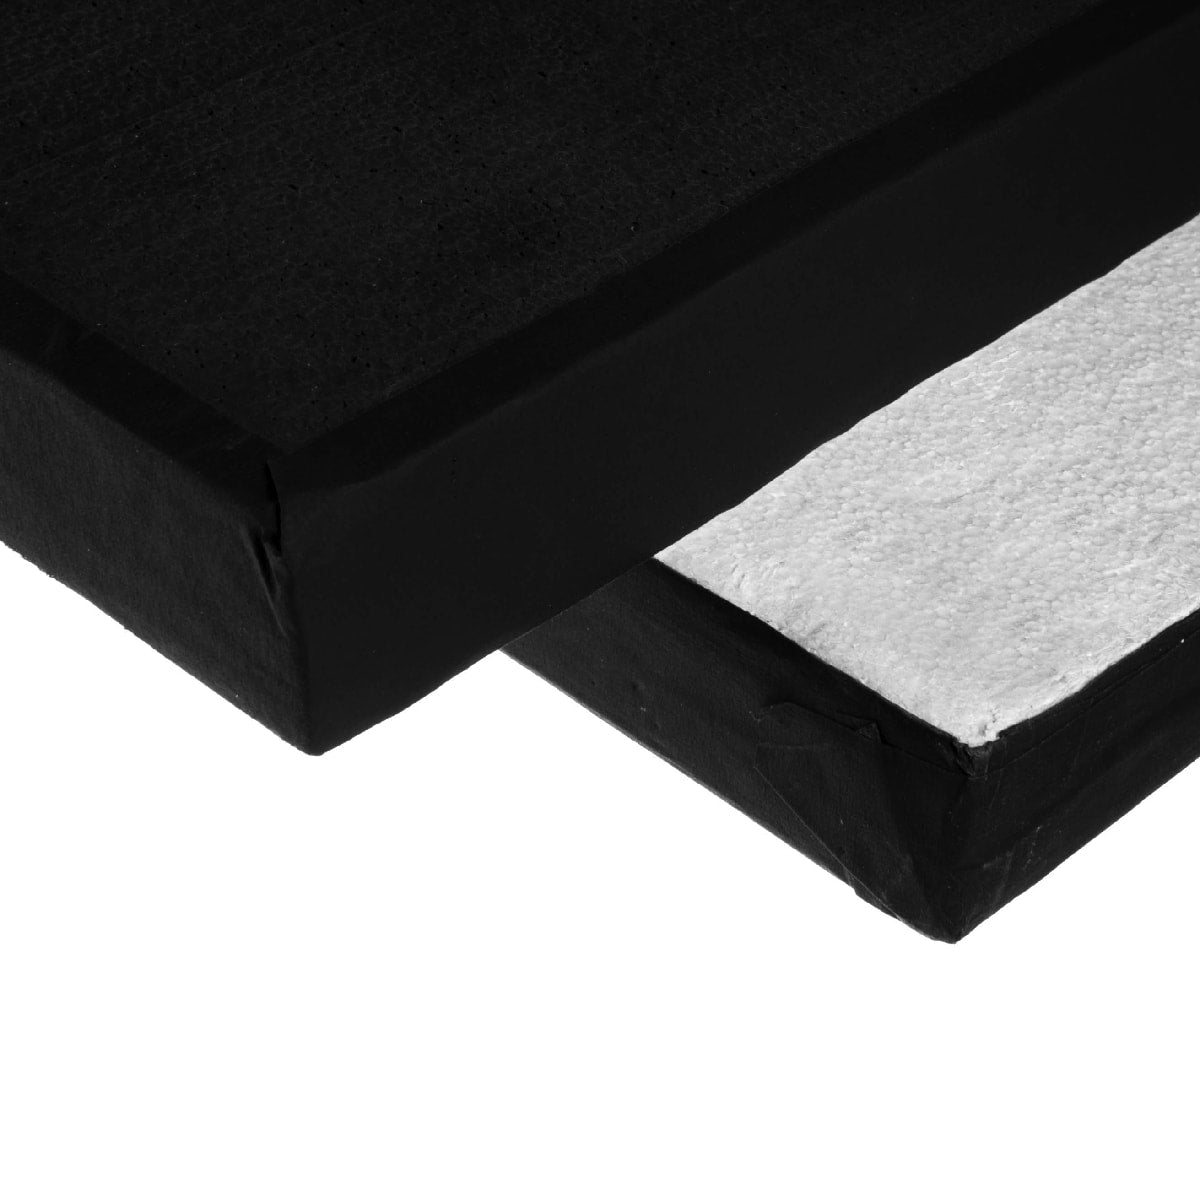  Polyboard black/white 120 x 200 cm / 4 x 6,5'